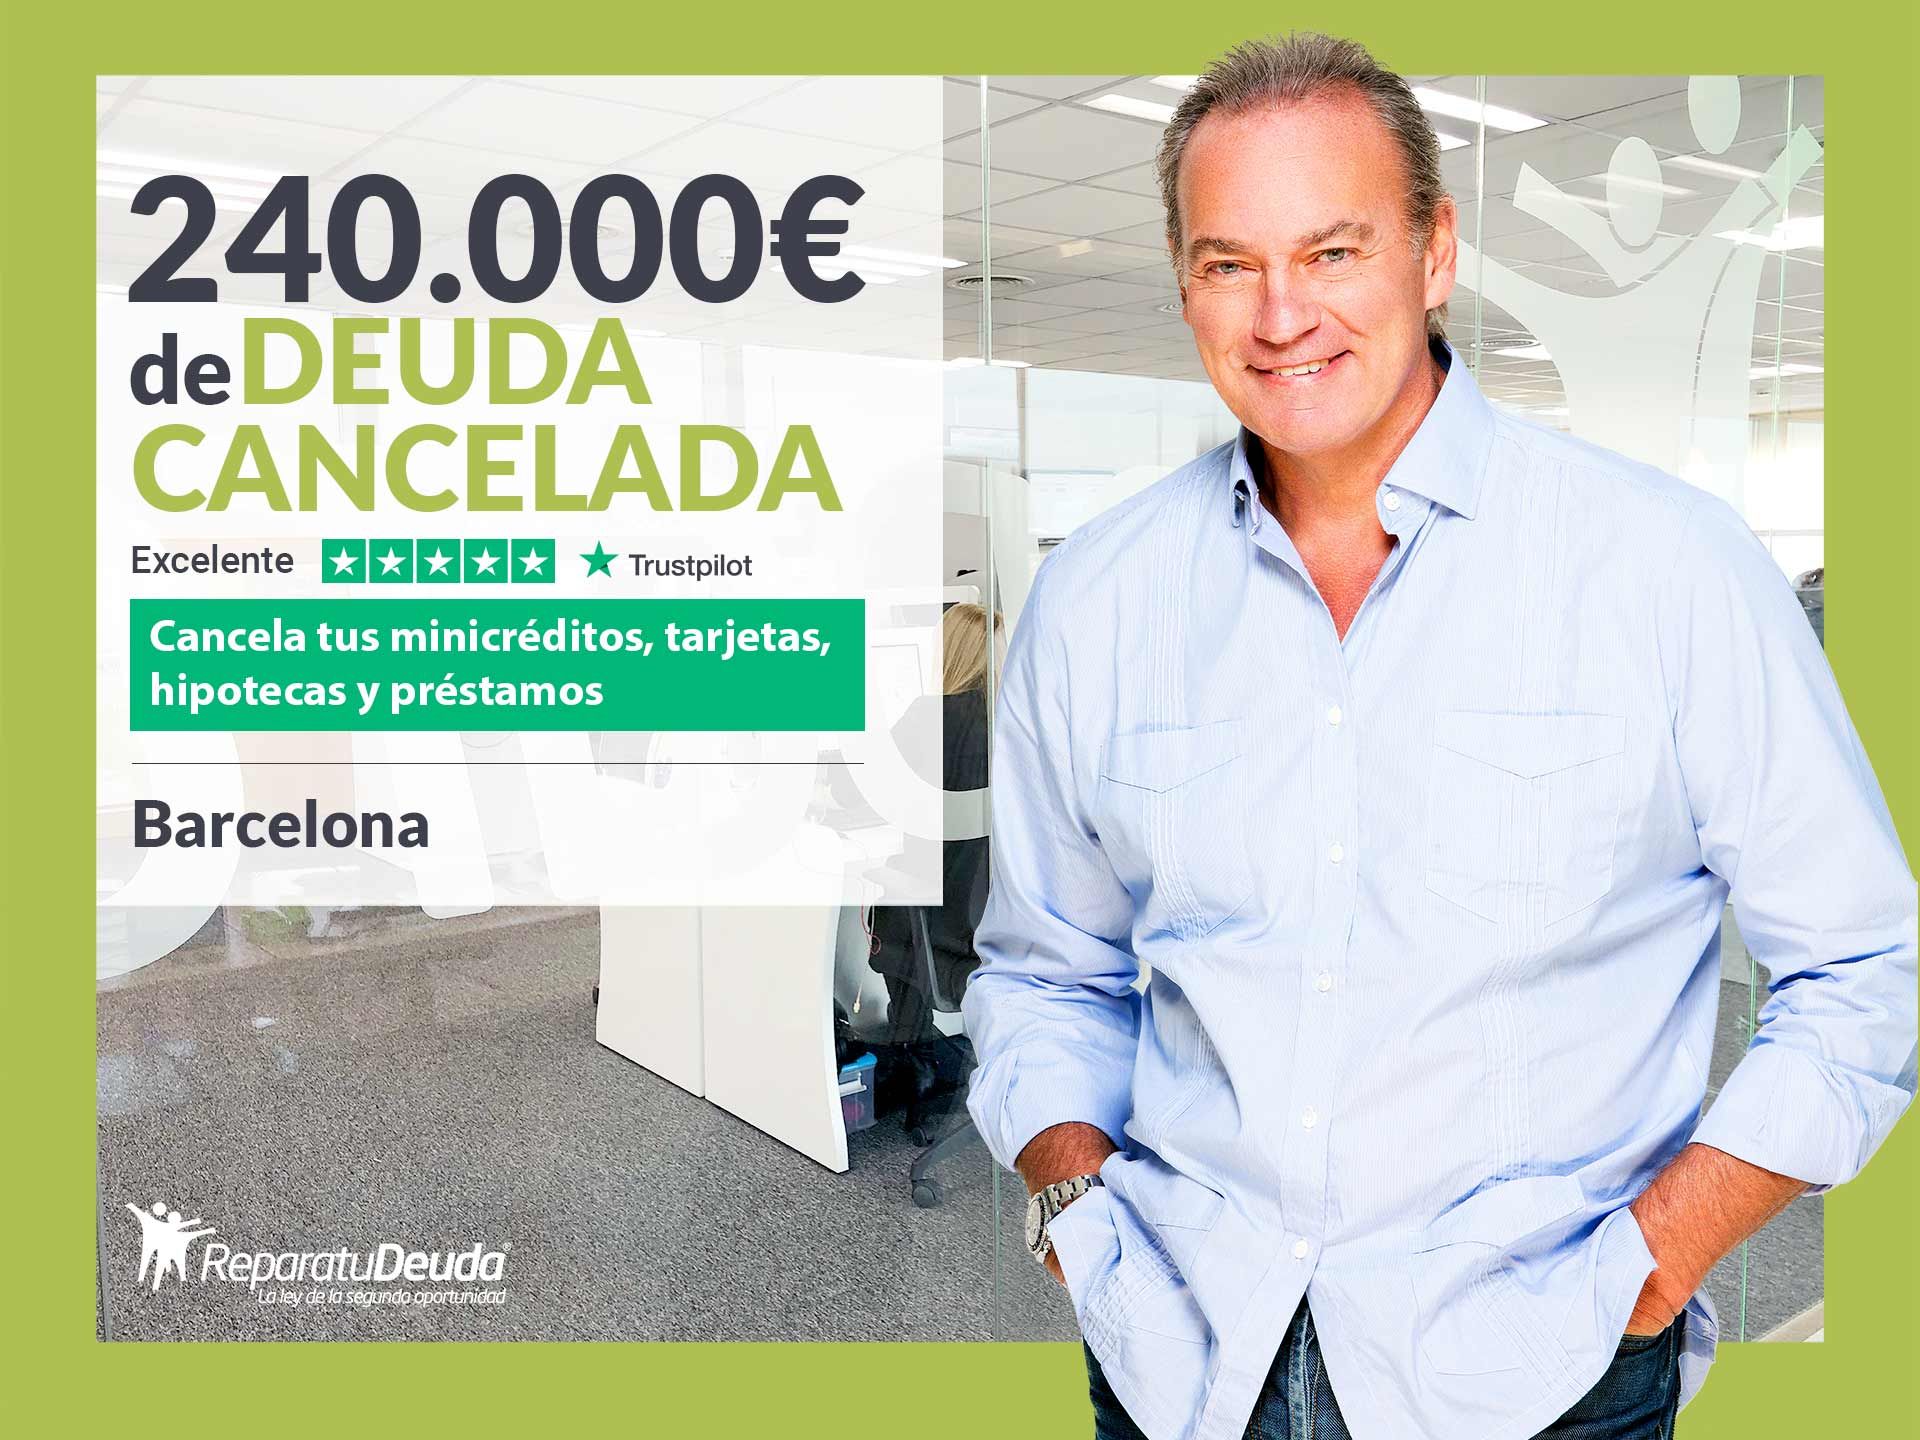 Repara tu Deuda Abogados cancela 240.000? en Barcelona (Catalunya) gracias a la Ley de Segunda Oportunidad